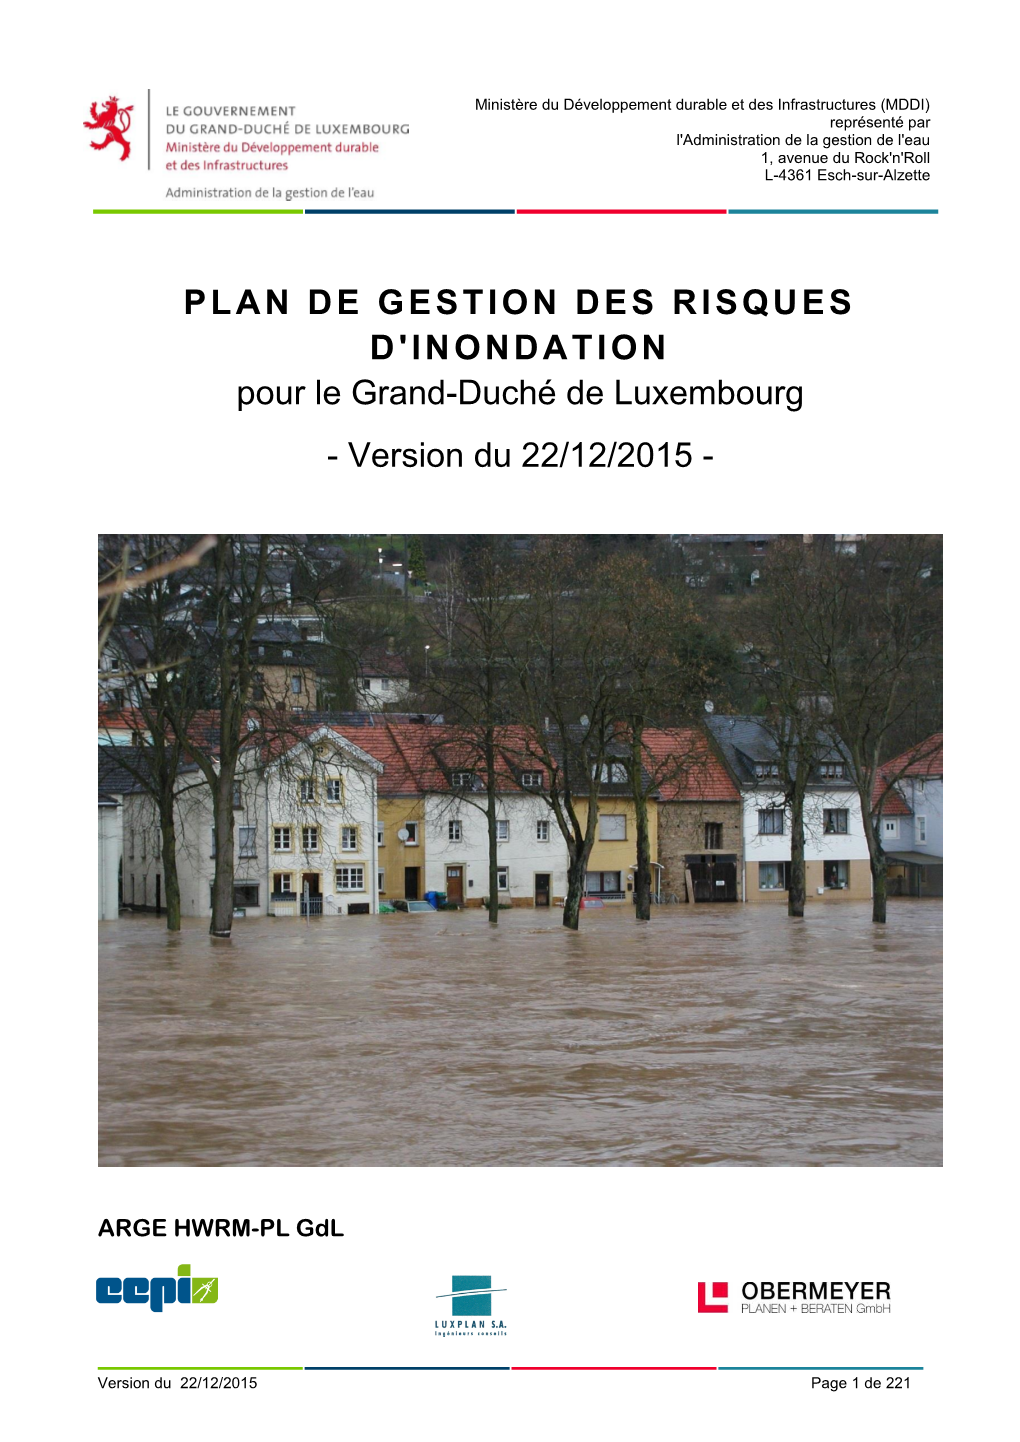 PLAN DE GESTION DES RISQUES D'inondation Pour Le Grand-Duché De Luxembourg - Version Du 22/12/2015